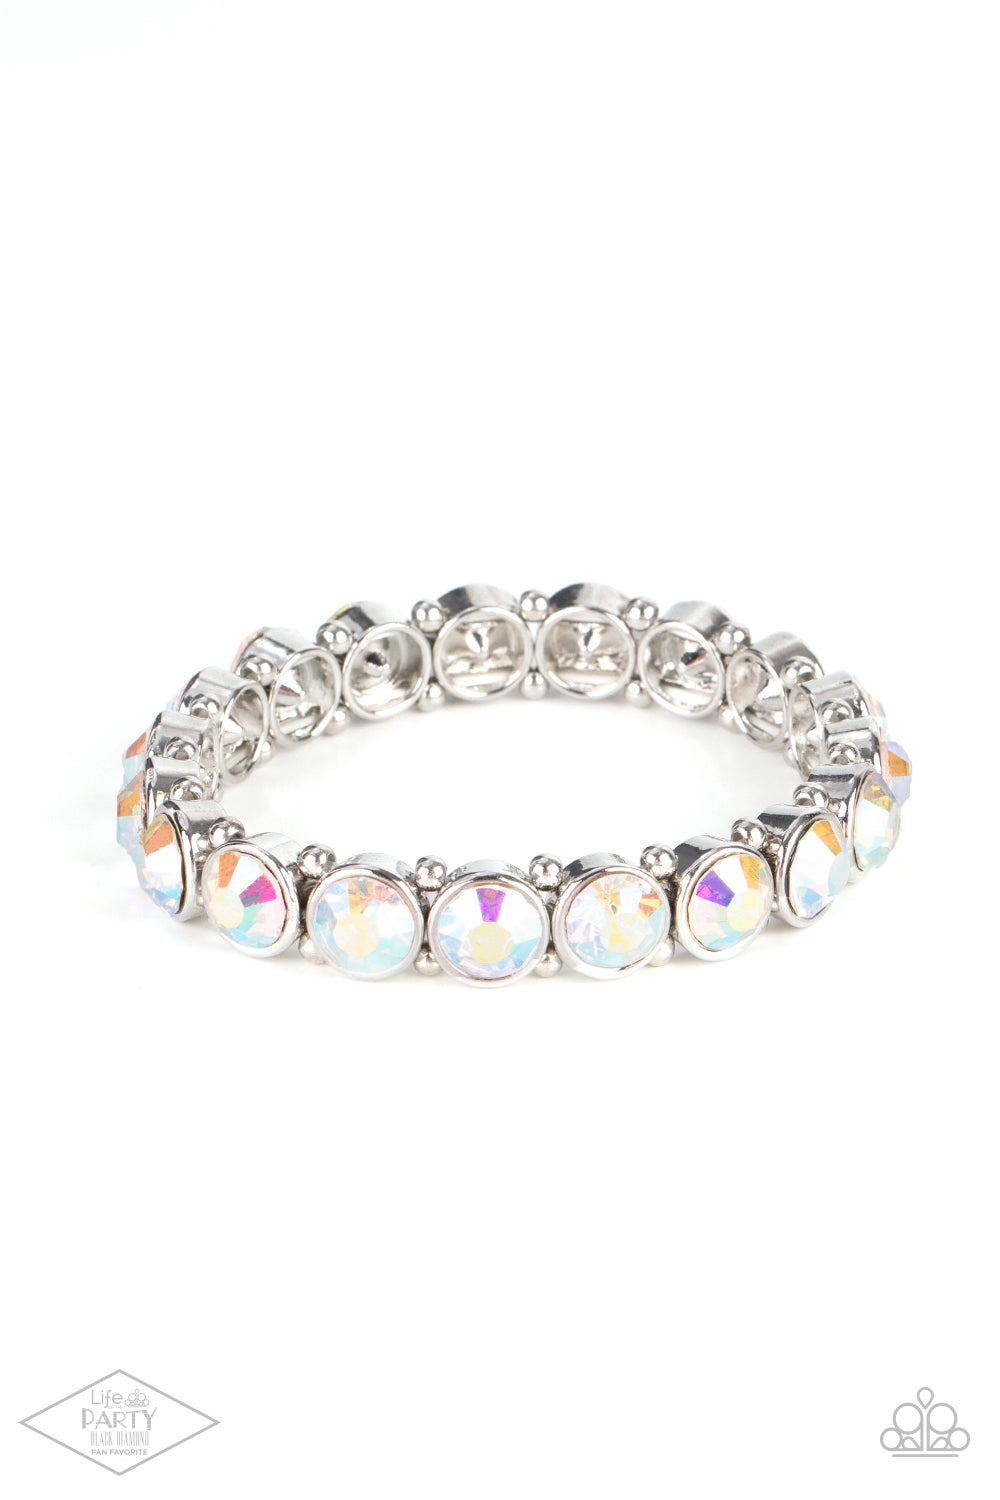 Colorful Bracelet - Iridescent Jewelry - Paparazzi Sugar Coated Sparkle Paparazzi jewelry image